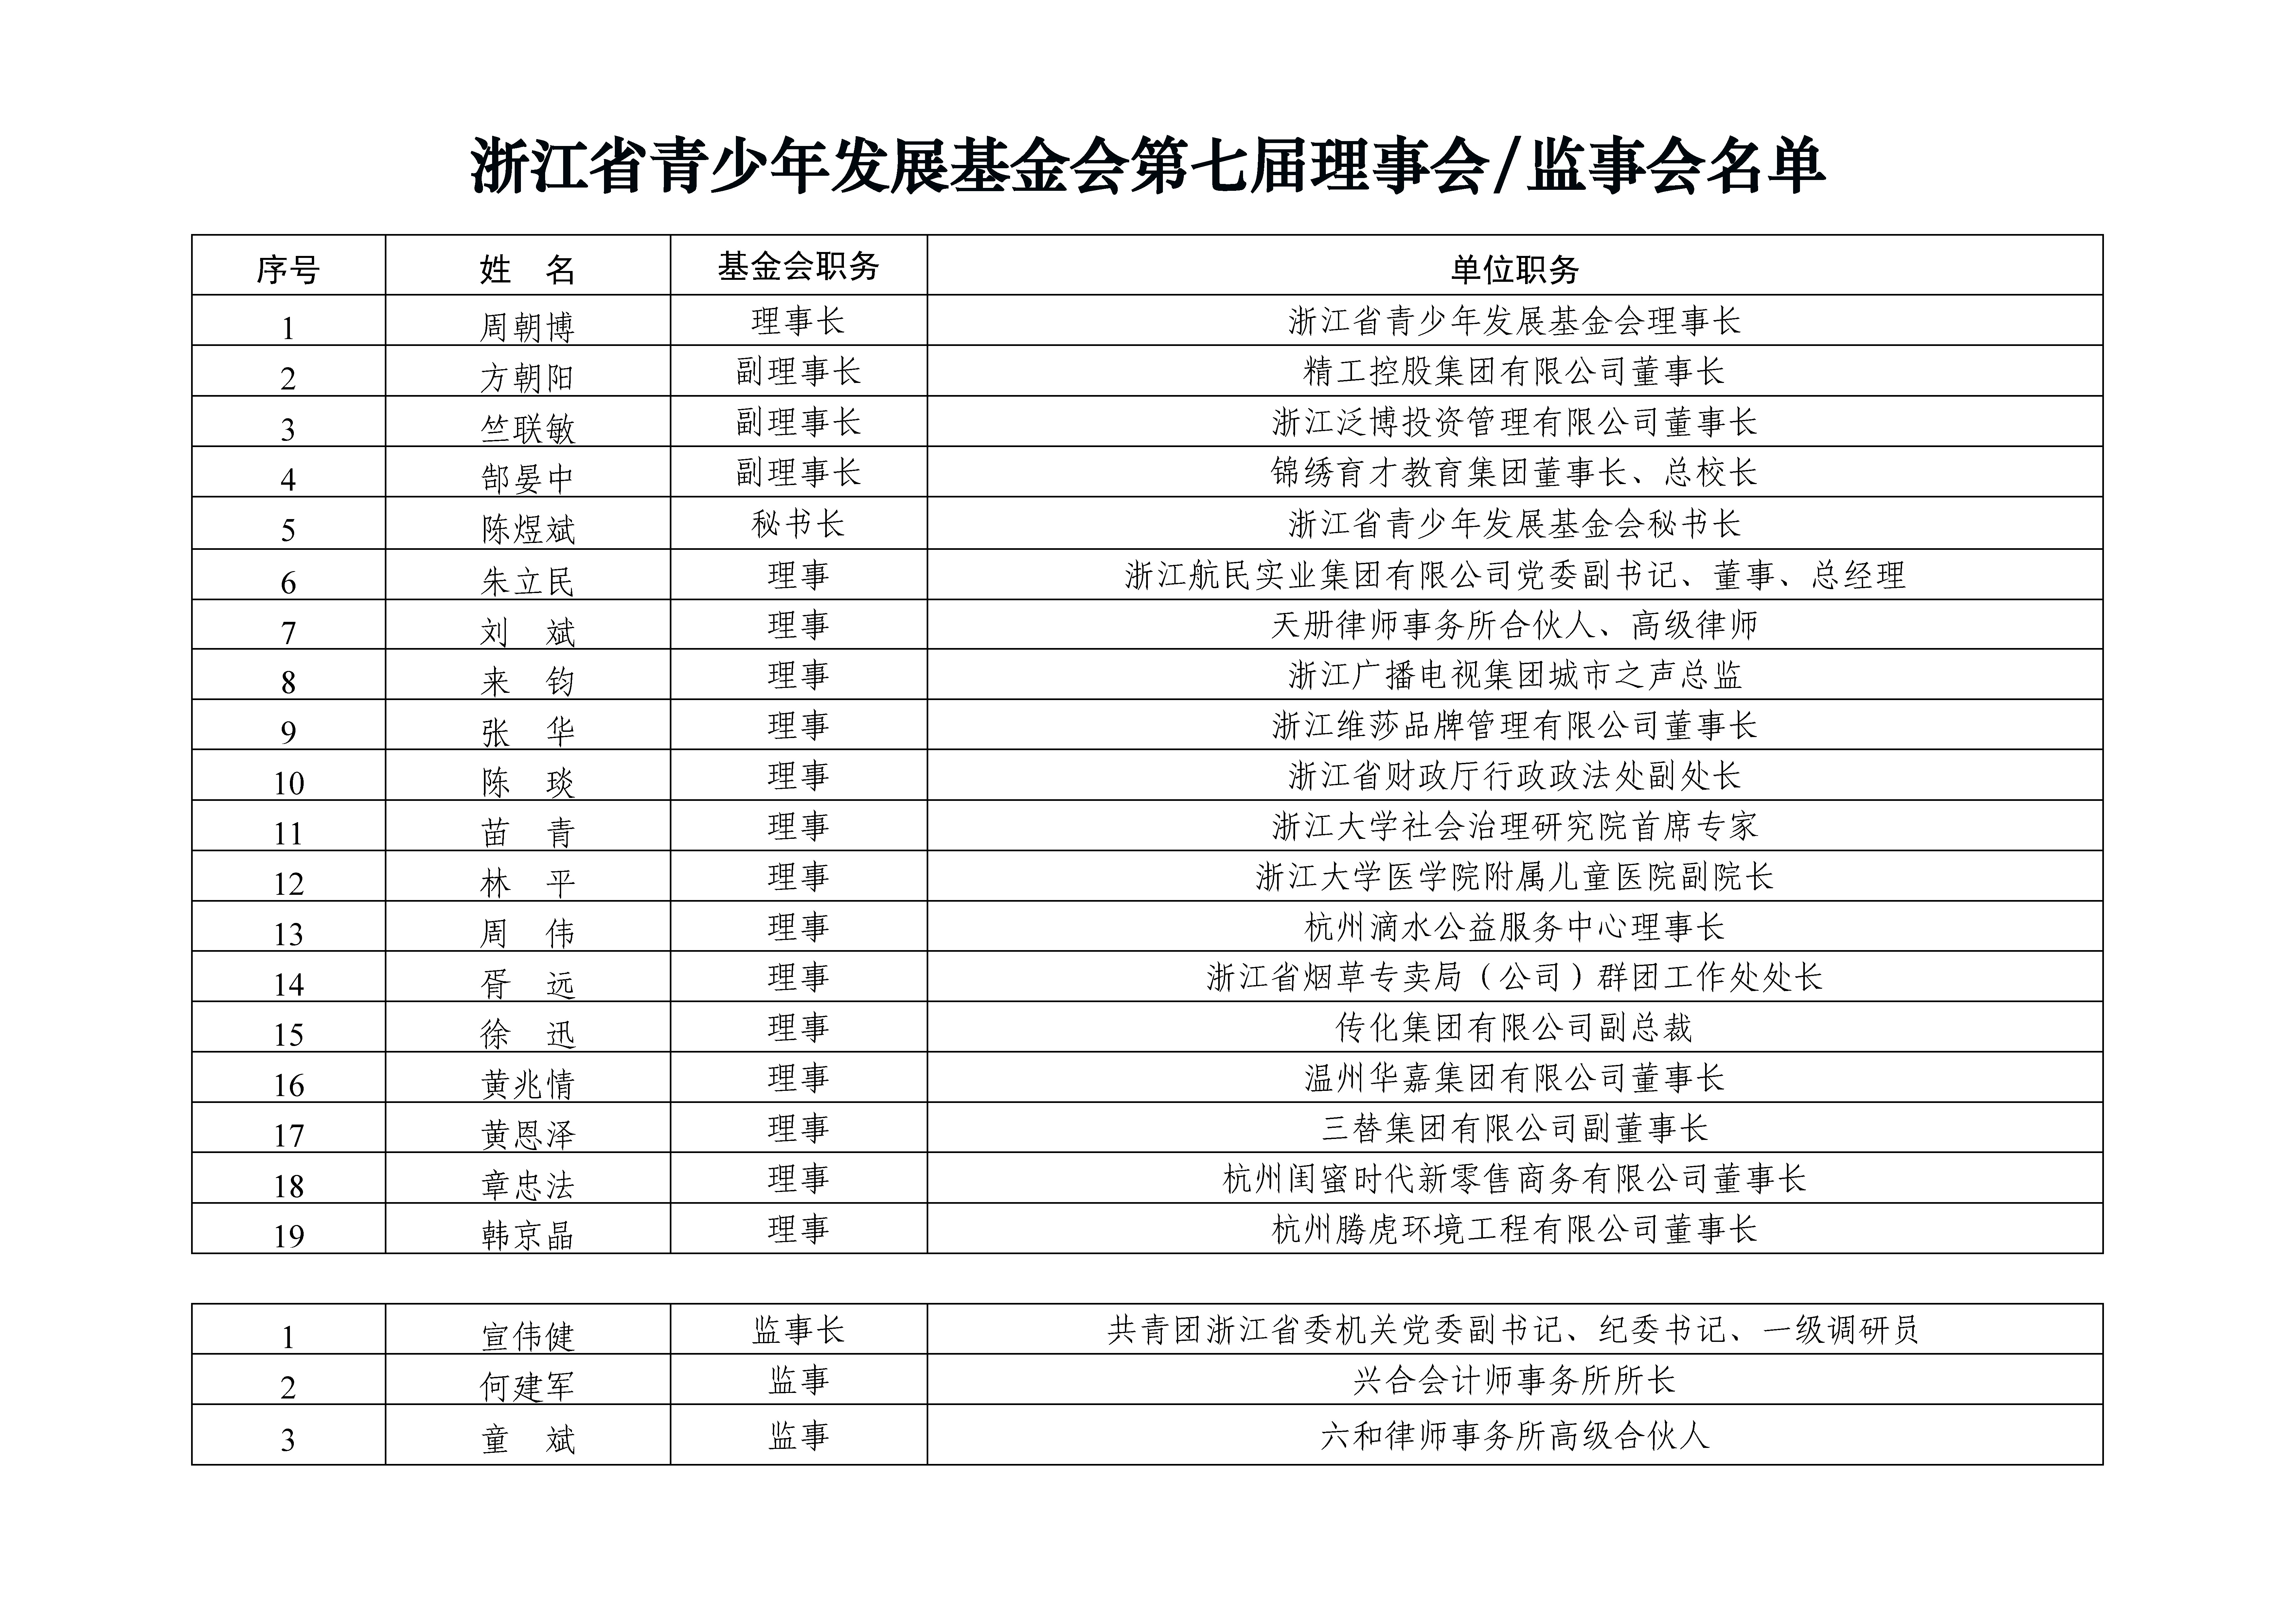 浙江省青少年发展基金会第七届理事会、监事会成员名单.jpg